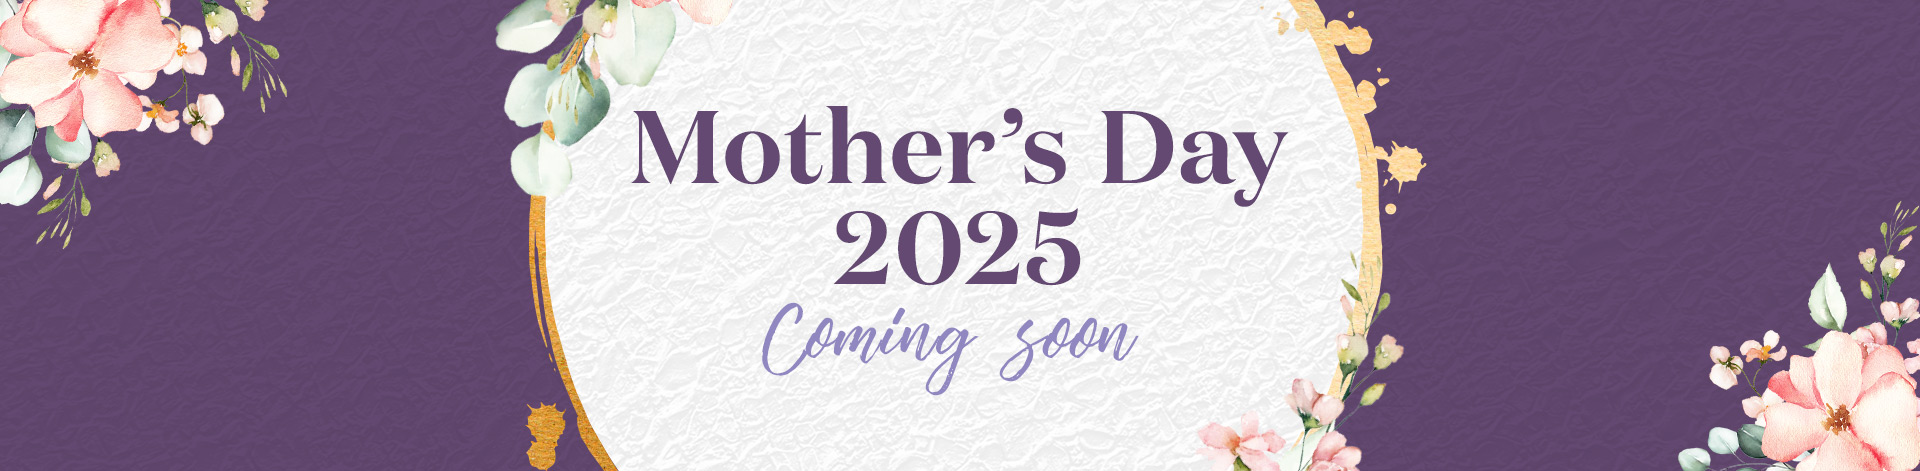 vin-2025-mothersday-holding-banner.jpg